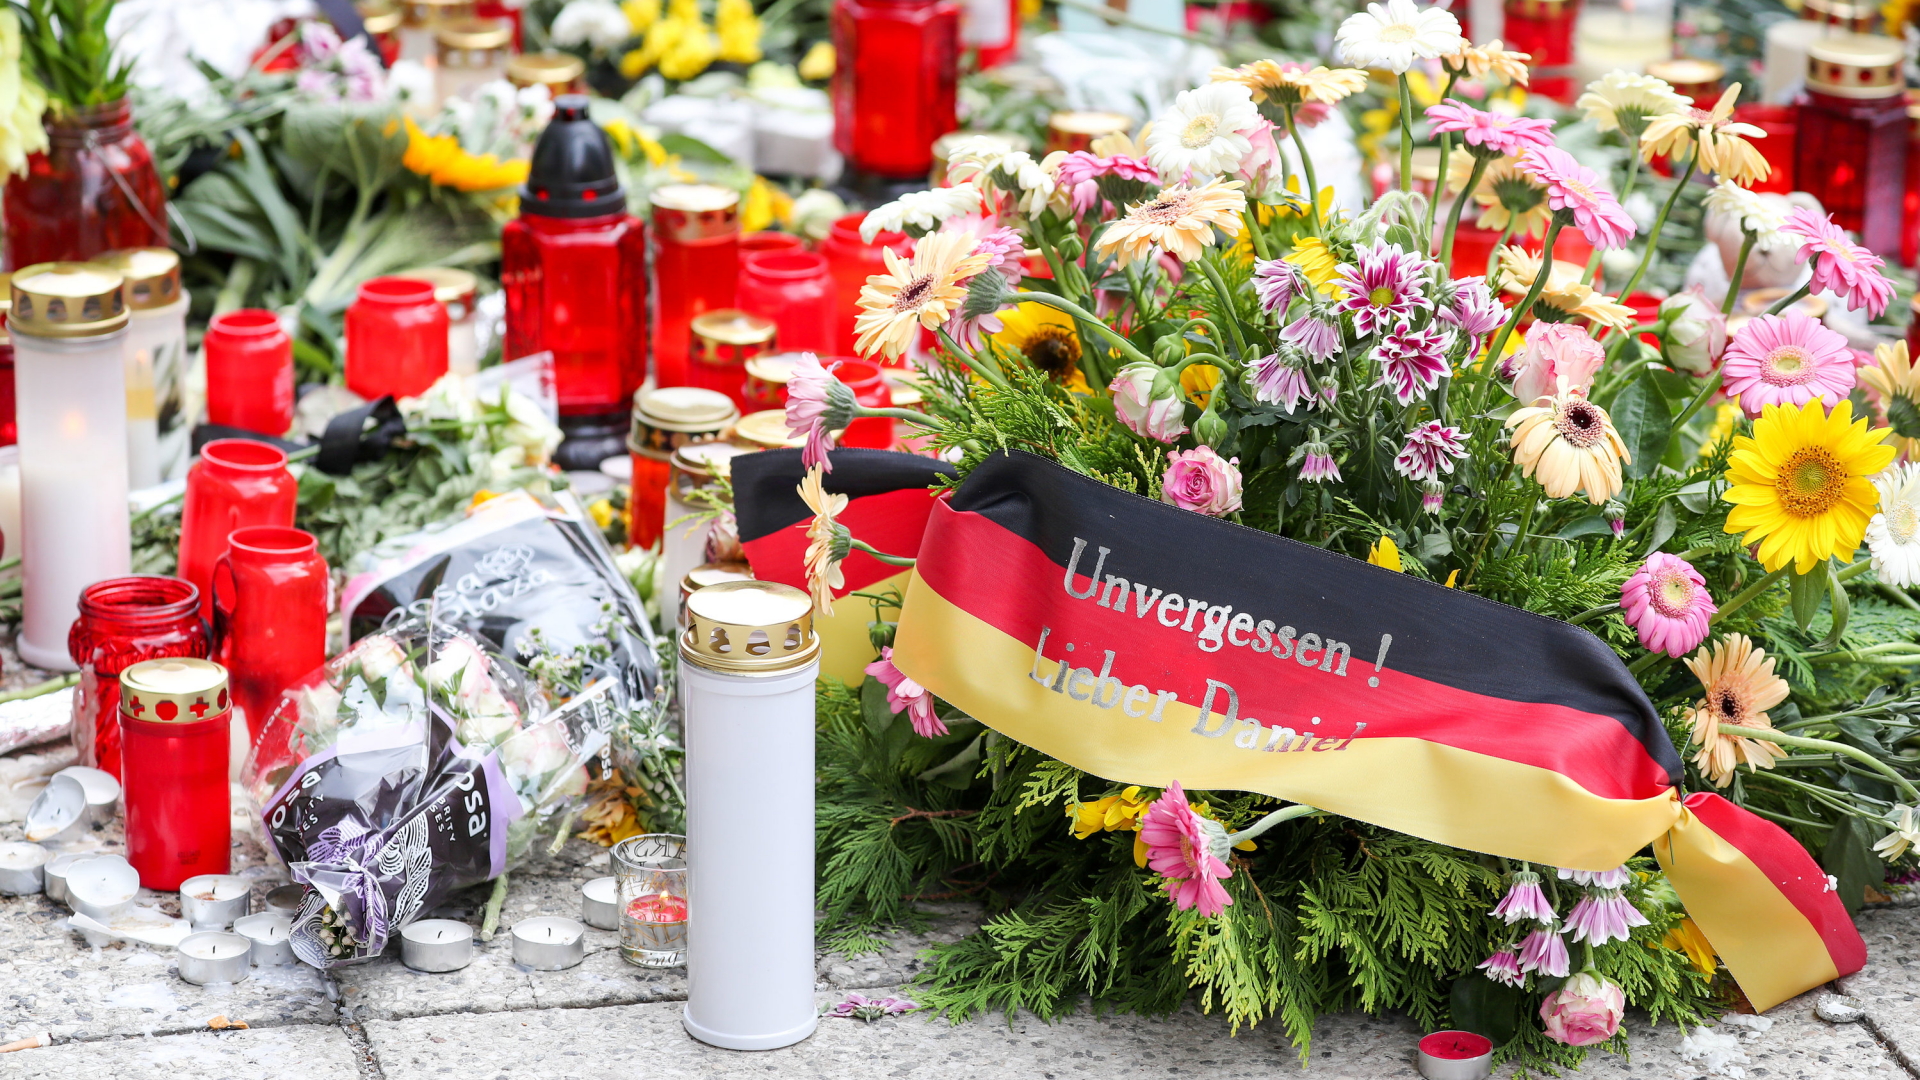 Kerzen und Blumen liegen auf einer Straße in Chemnitz, auf einer schwarz-rot-goldenen Binde steht: "Unvergessen! Lieber Daniel". | Bildquelle: dpa